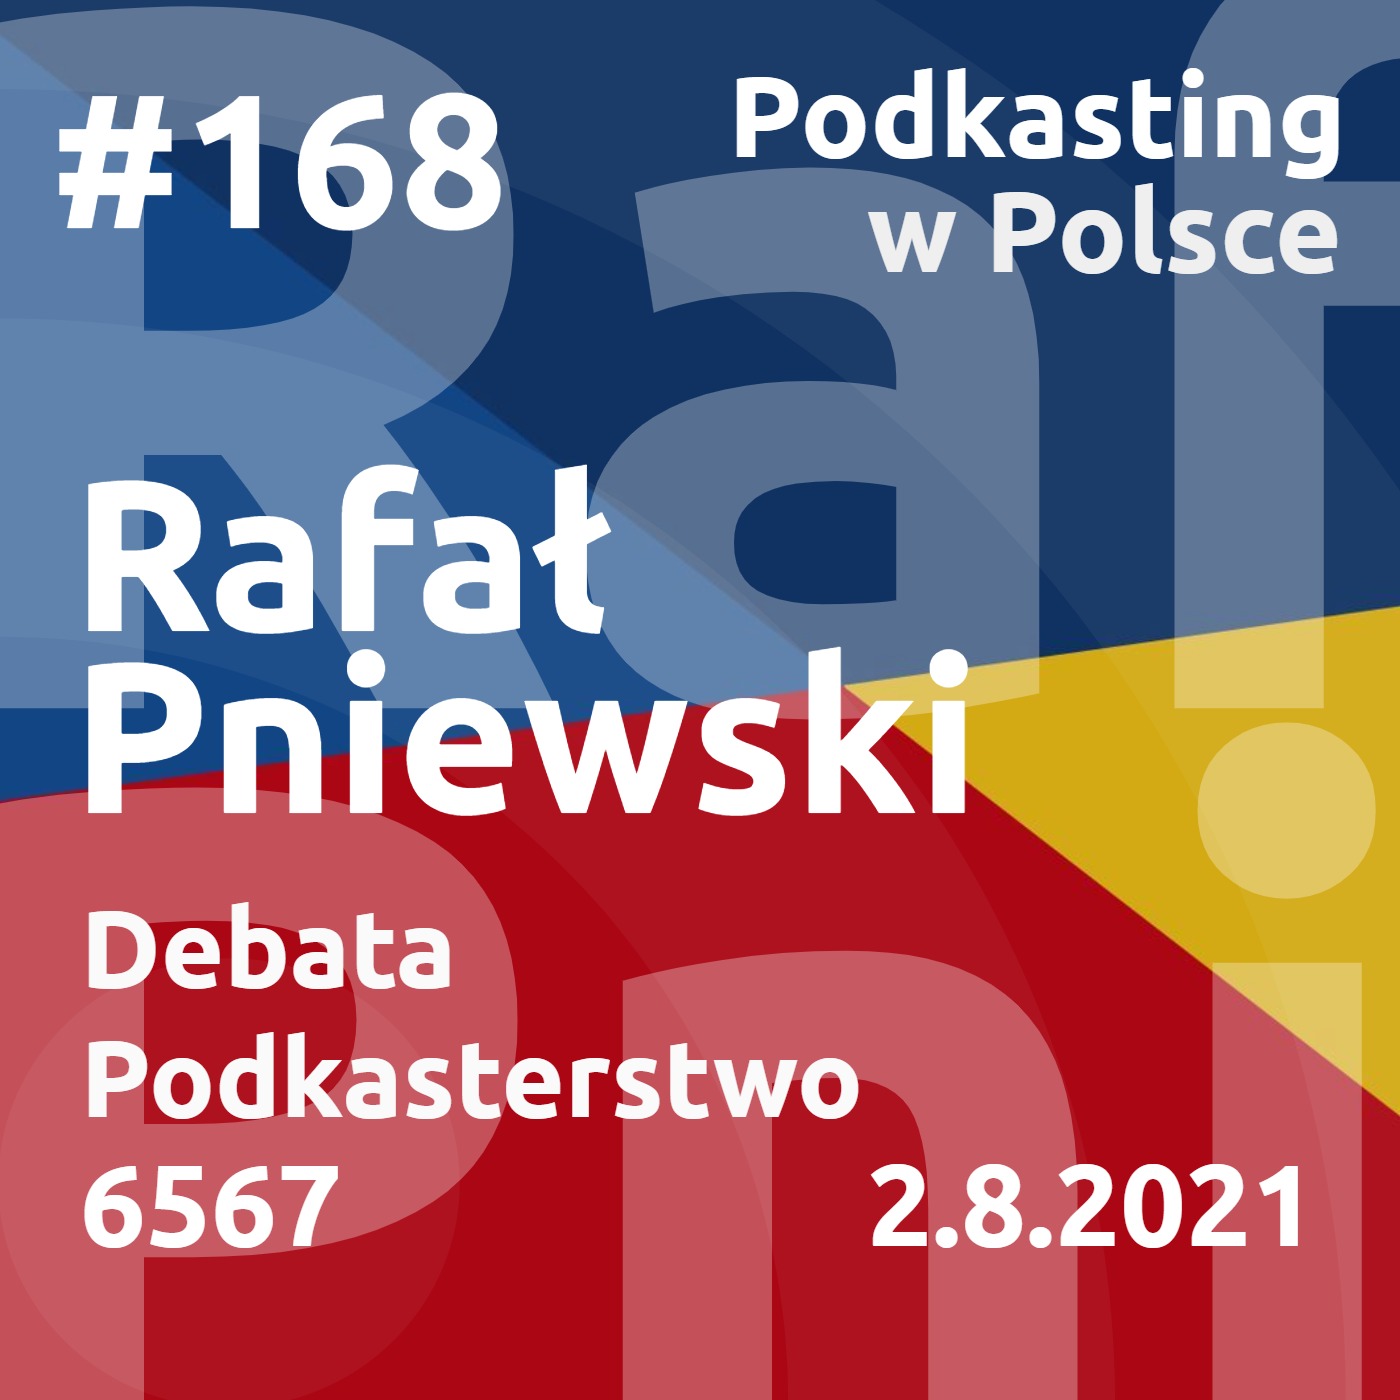 #168 - Rafał Pniewski - Podkasterstwo. Debata